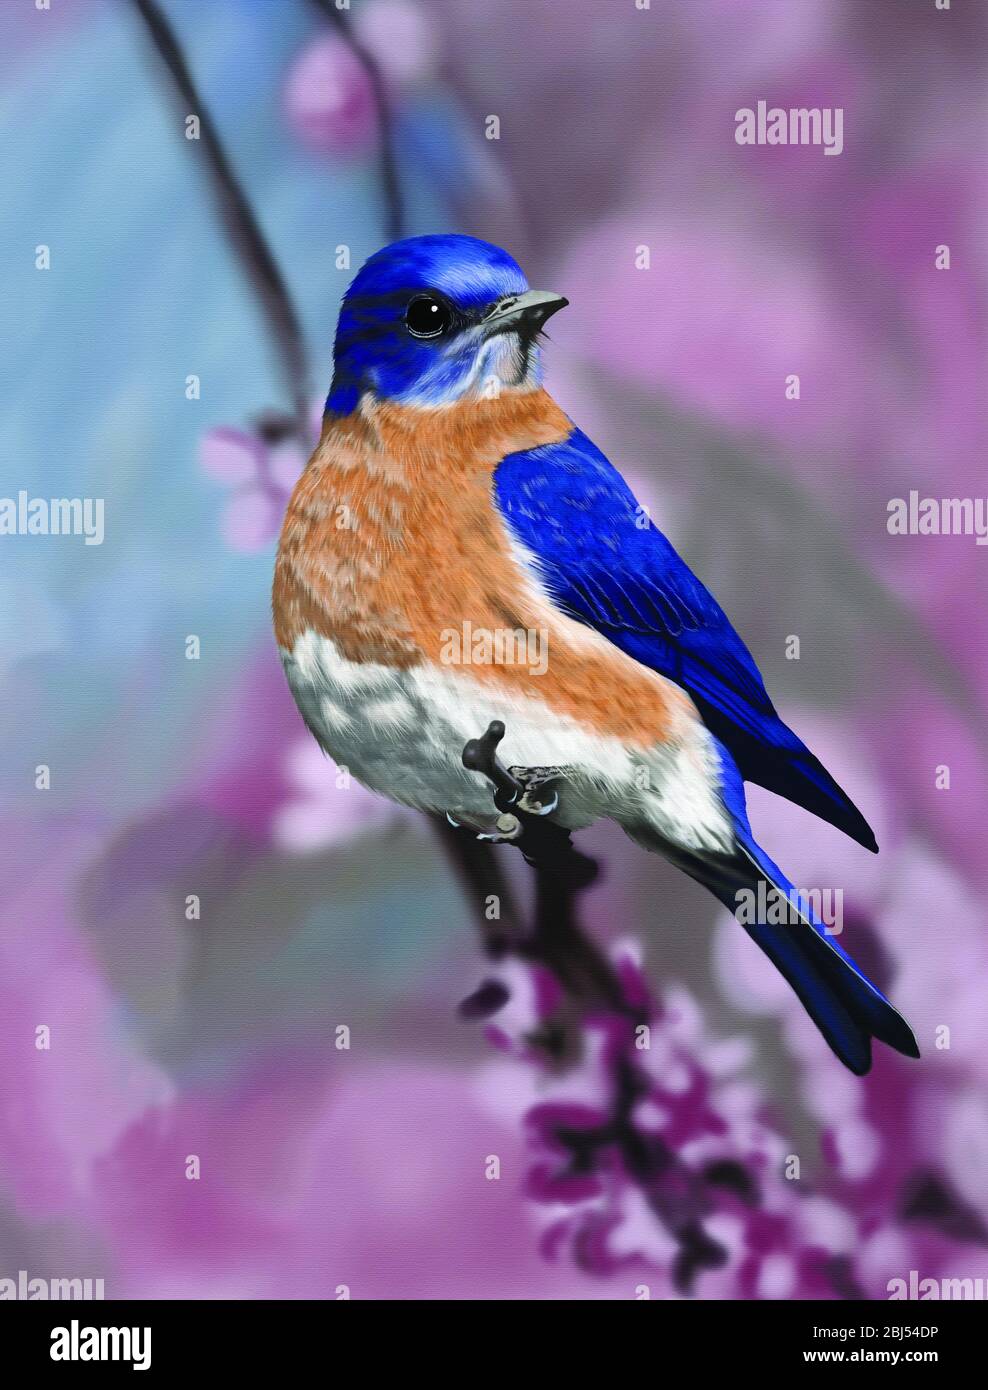 Happy Little Blue Bird. Die Blauvögel sind eine Gruppe von mittelgroßen, meist insektenfressenden oder allesfressenden Vögeln der Gattung Sialia der Drossel-Familie. Stockfoto